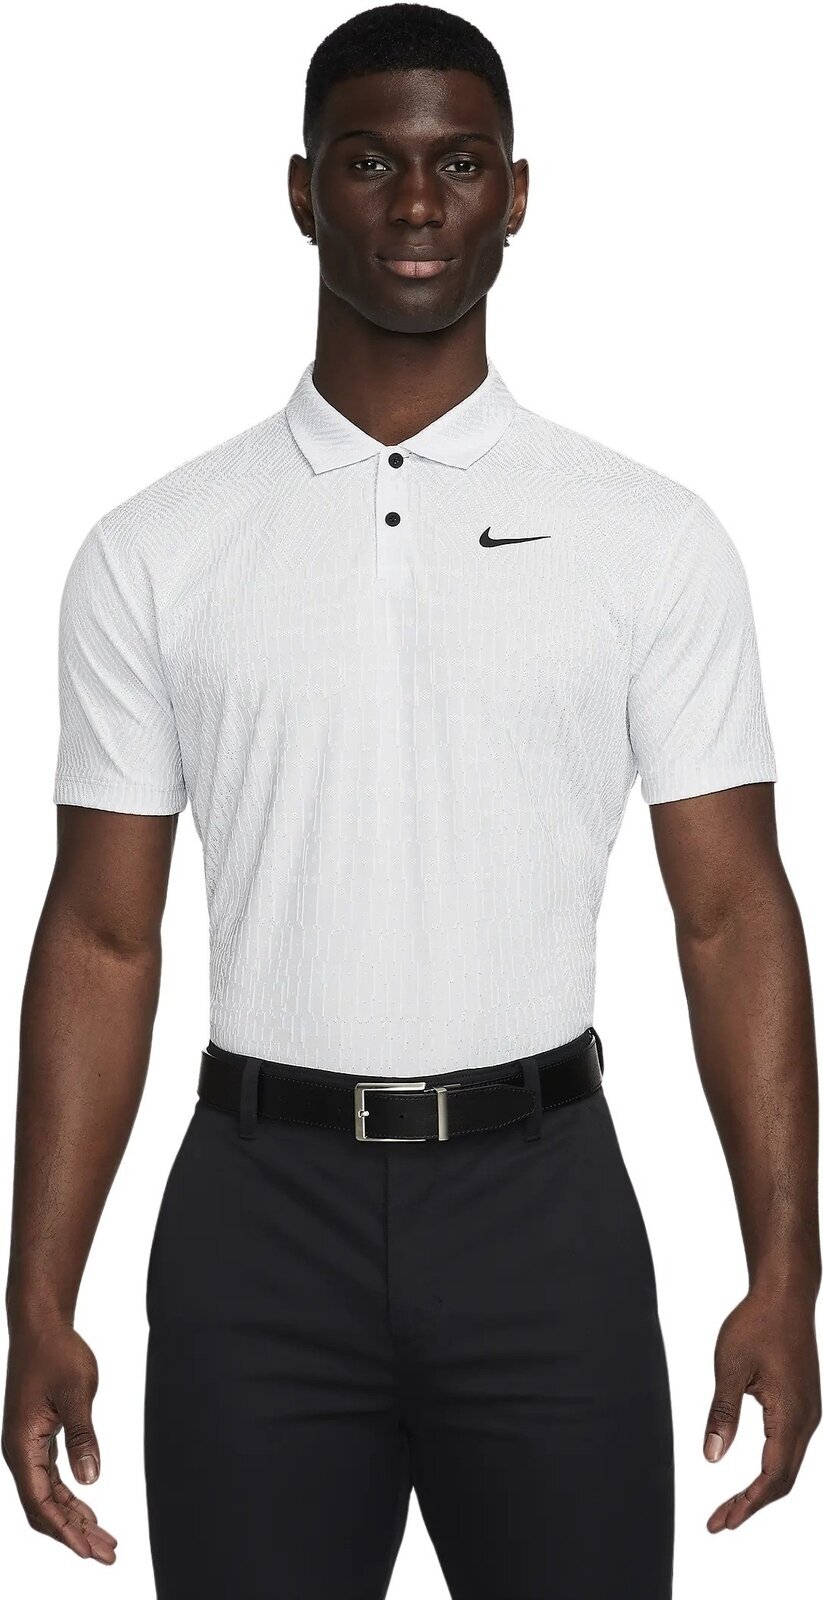 Polo majica Nike Dri-Fit ADV Tour Mens Polo White/Pure Platinum/Black S